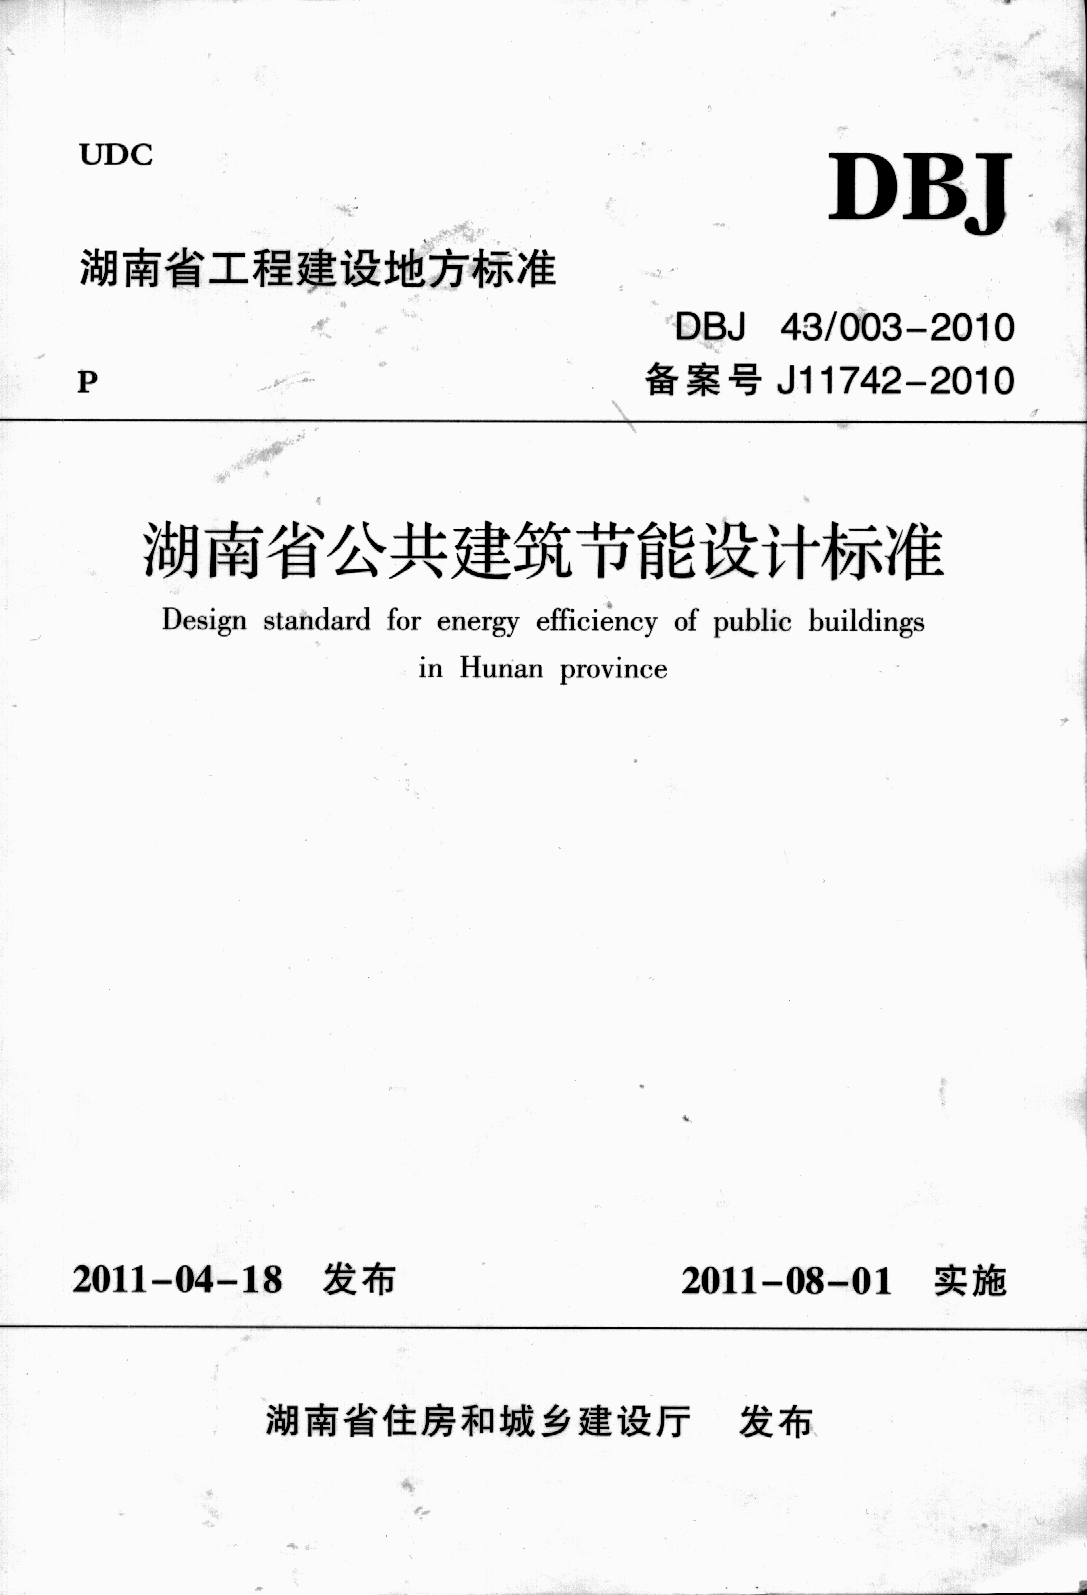 《湖南省公共建筑节能设计标准》(DBJ 43 003-2010)